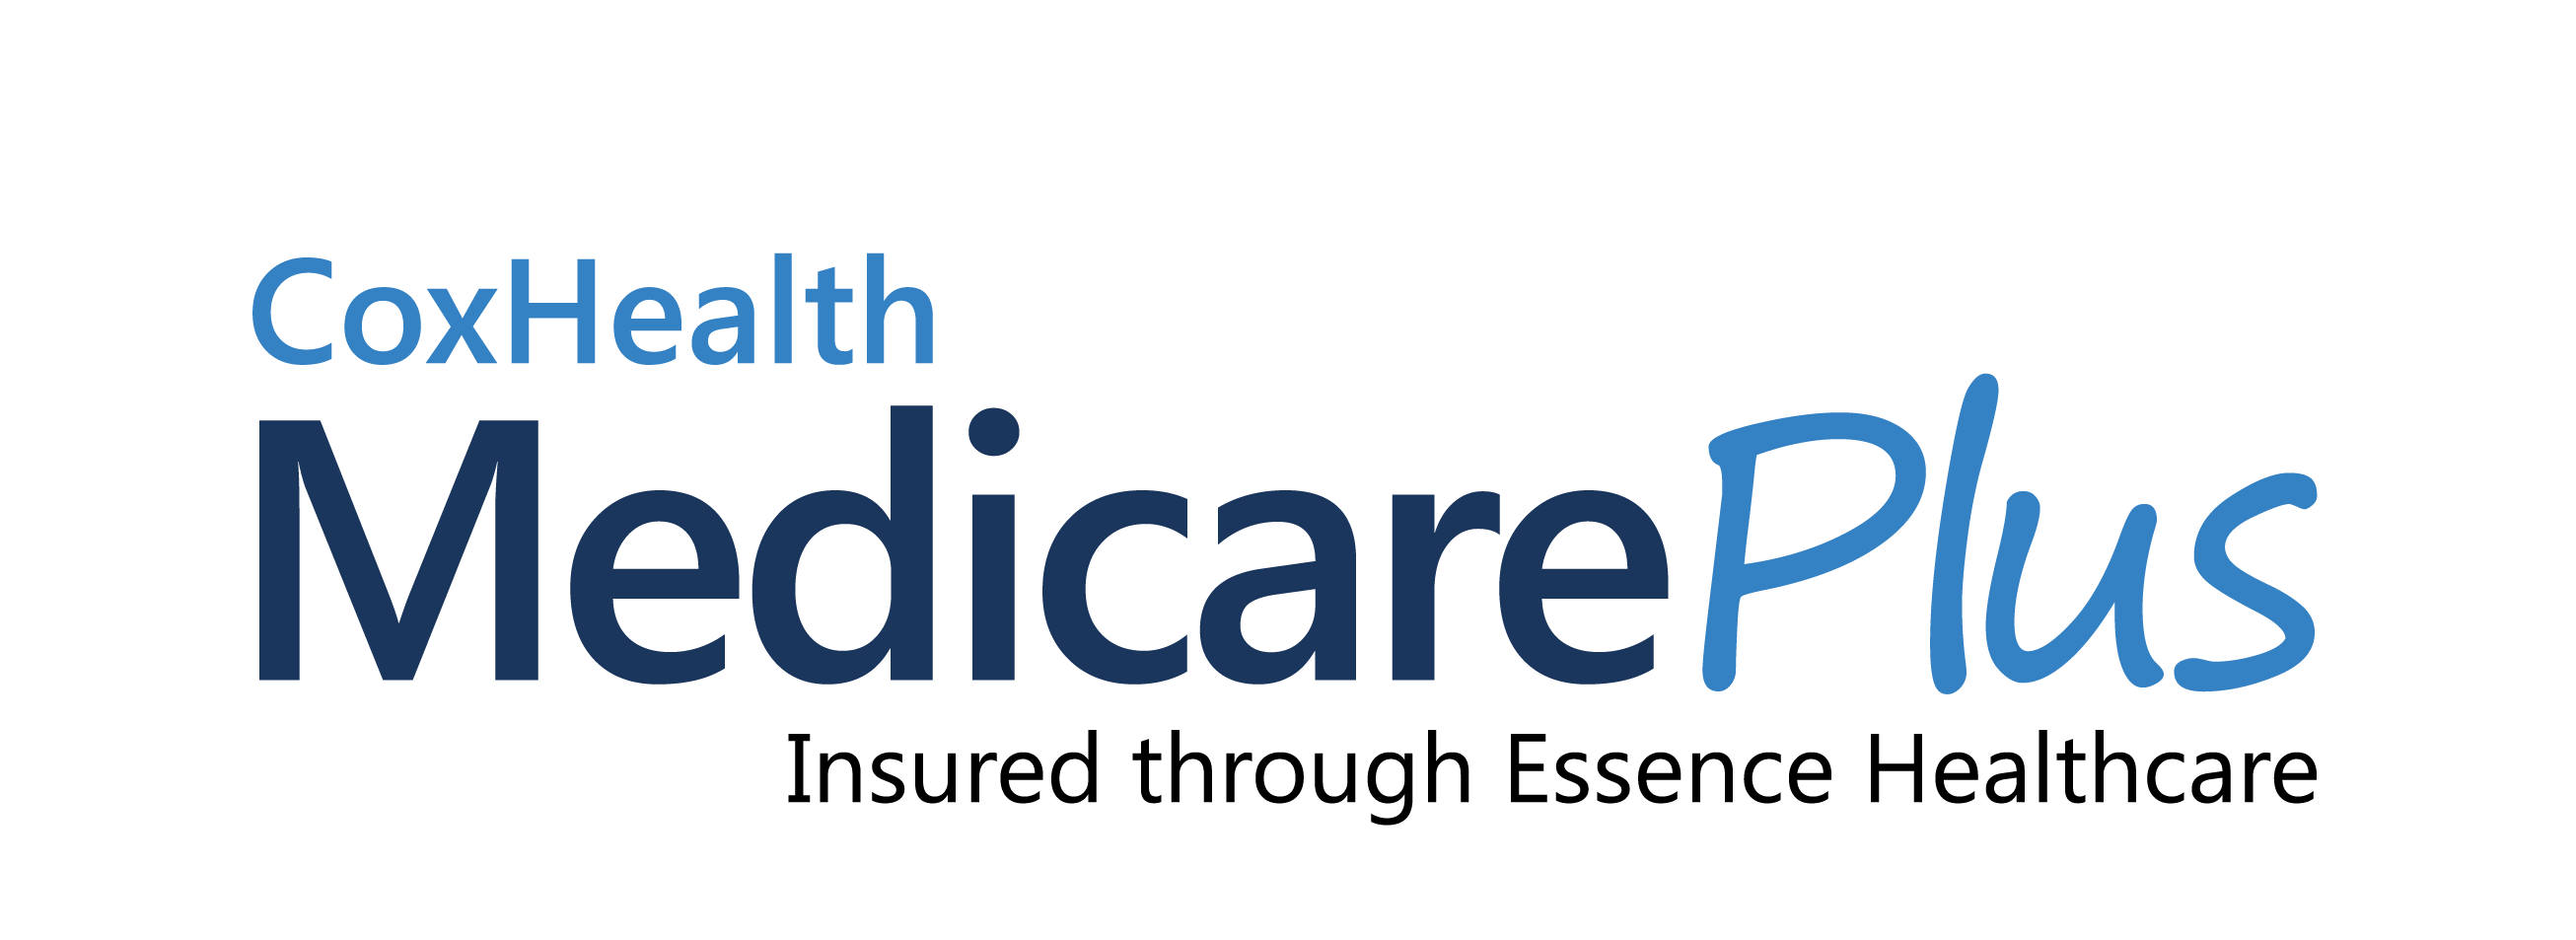 CoxHealth Medicare Plus